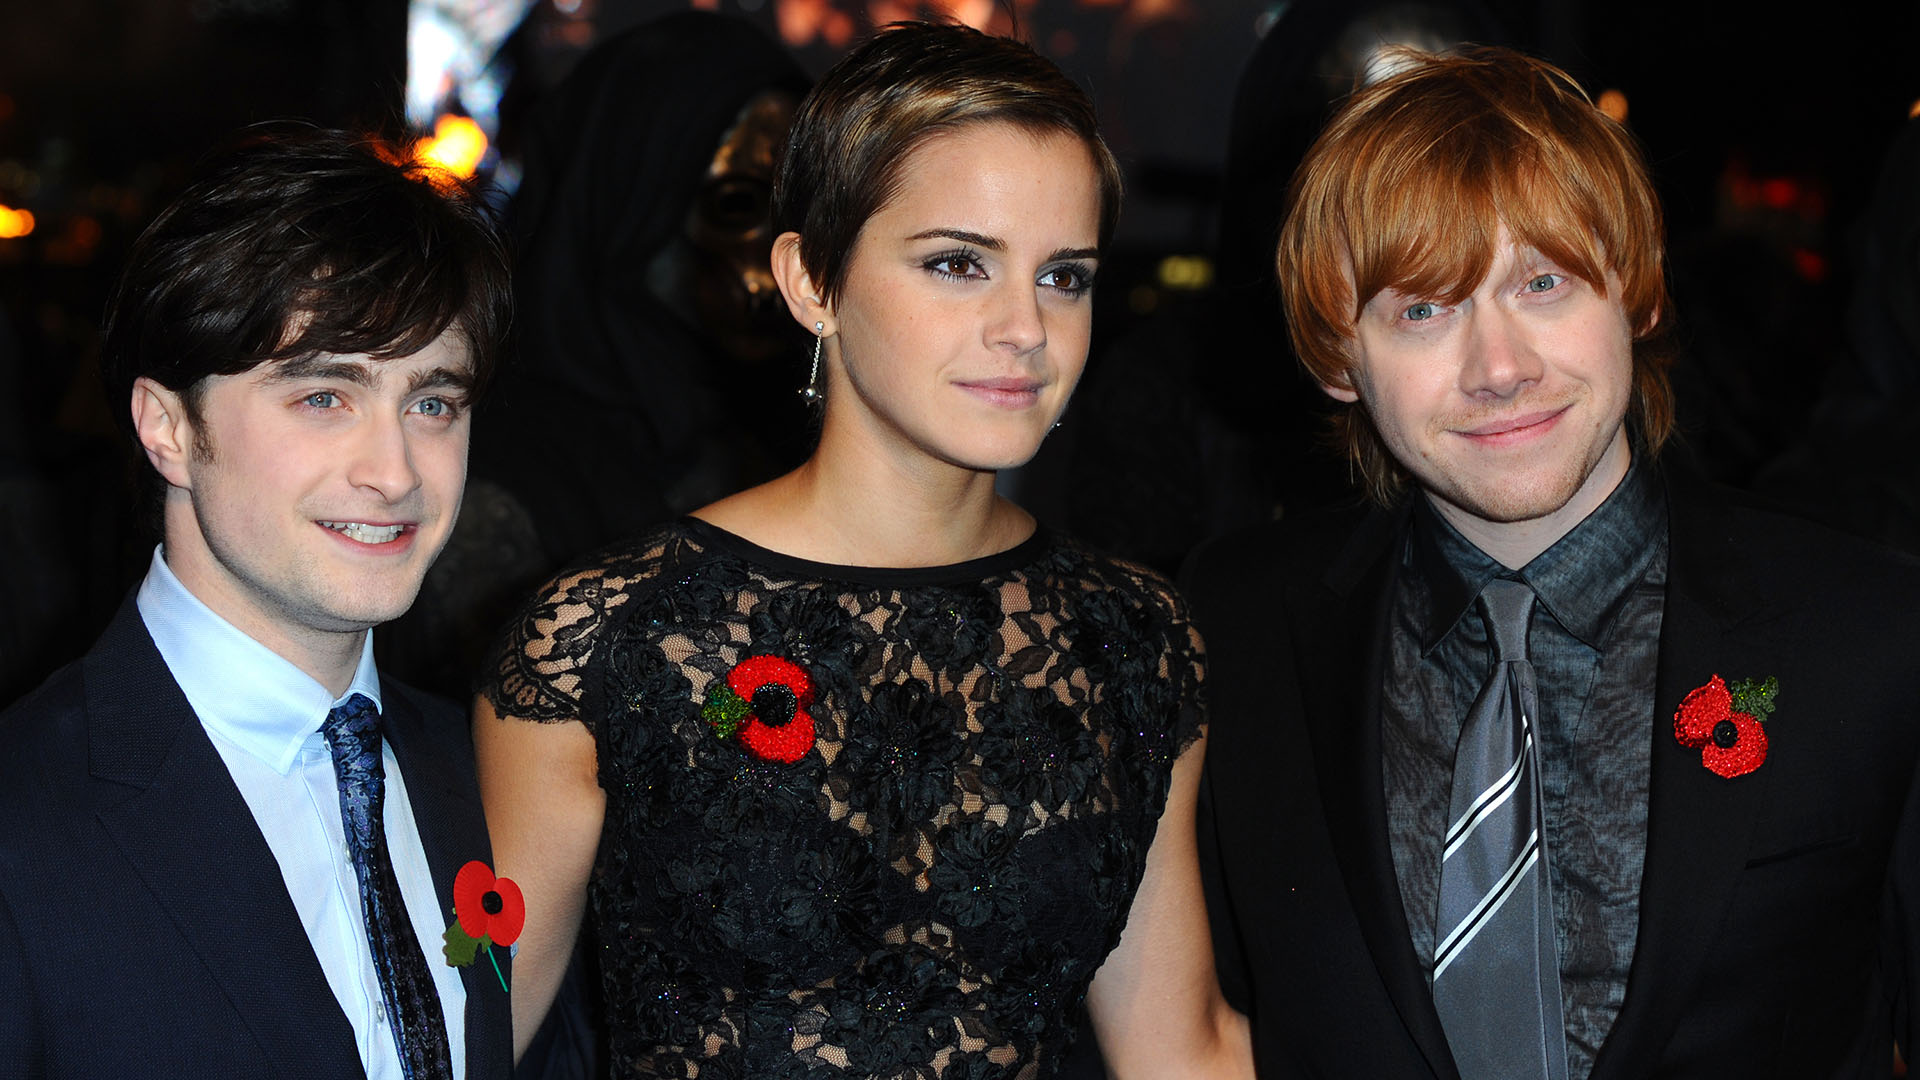 En compañía de Daniel Radcliffe y Rupert Grint, Emma Watson participó en las ocho películas de la saga "Harry Potter" desde 2001 hasta 2011 (Anthony Harvey/Getty Images)